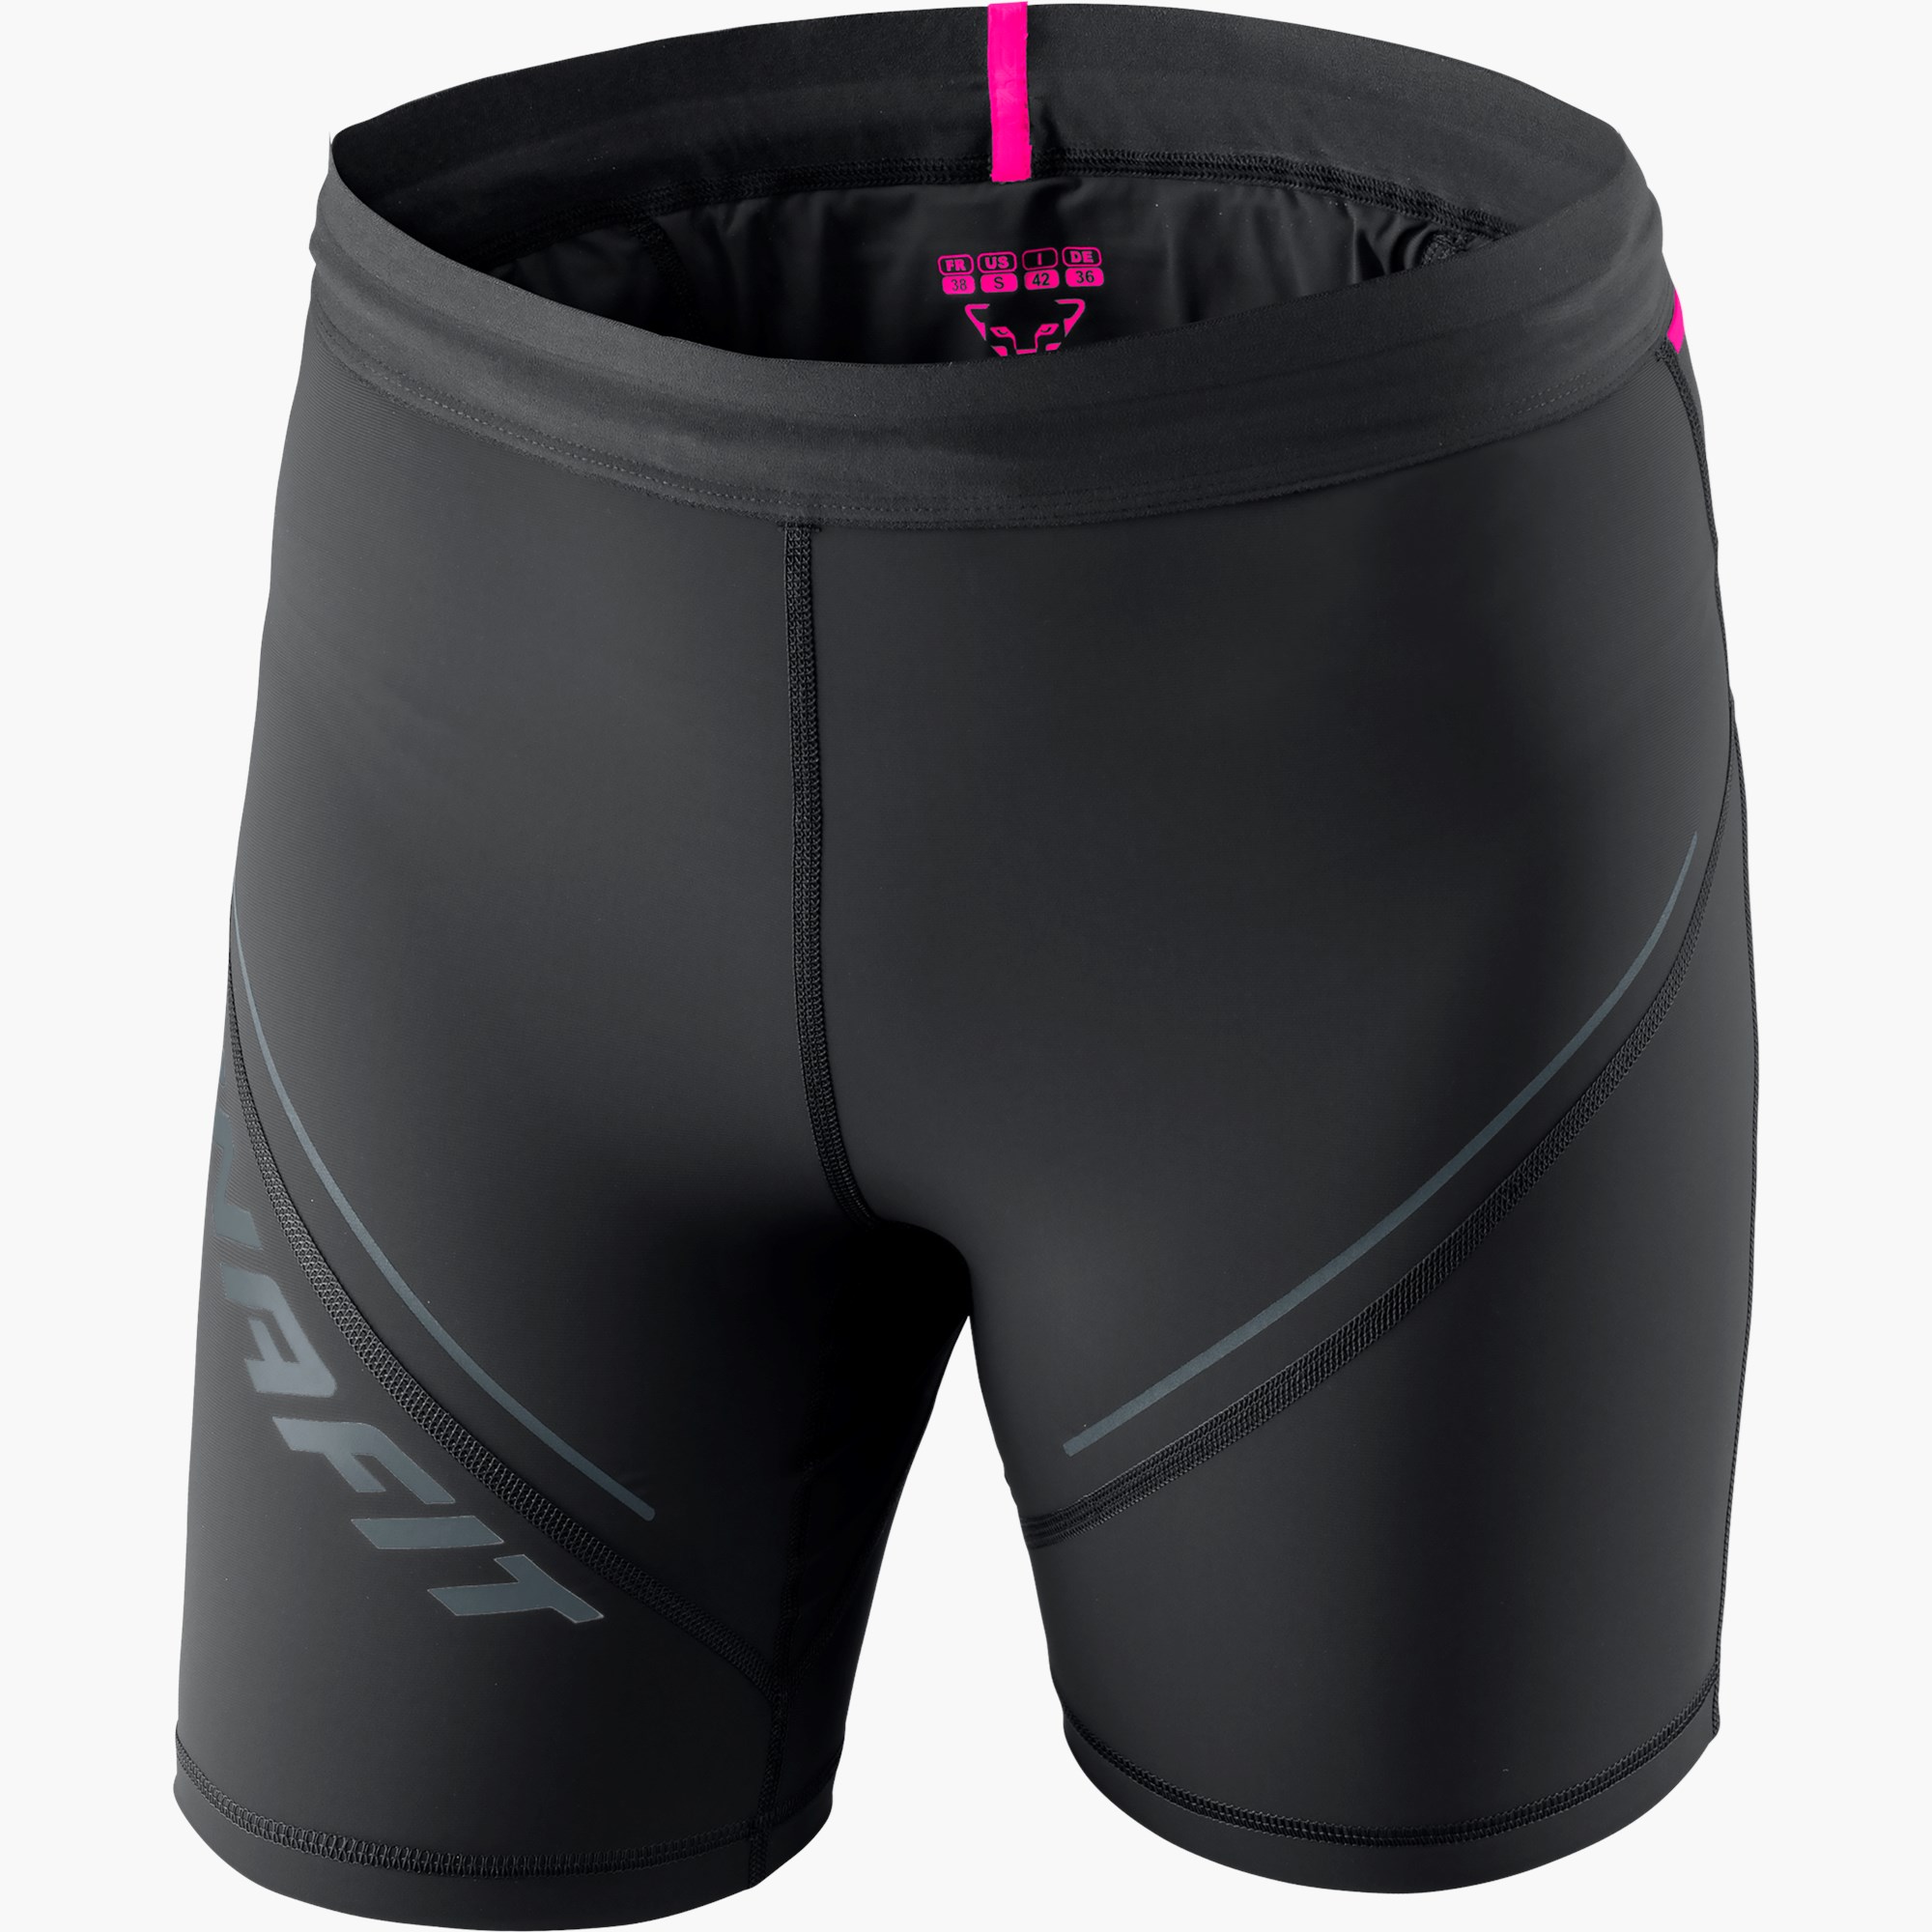 Buy Kalenji Dry+ Men's Breathable Running Shorts - Black Online